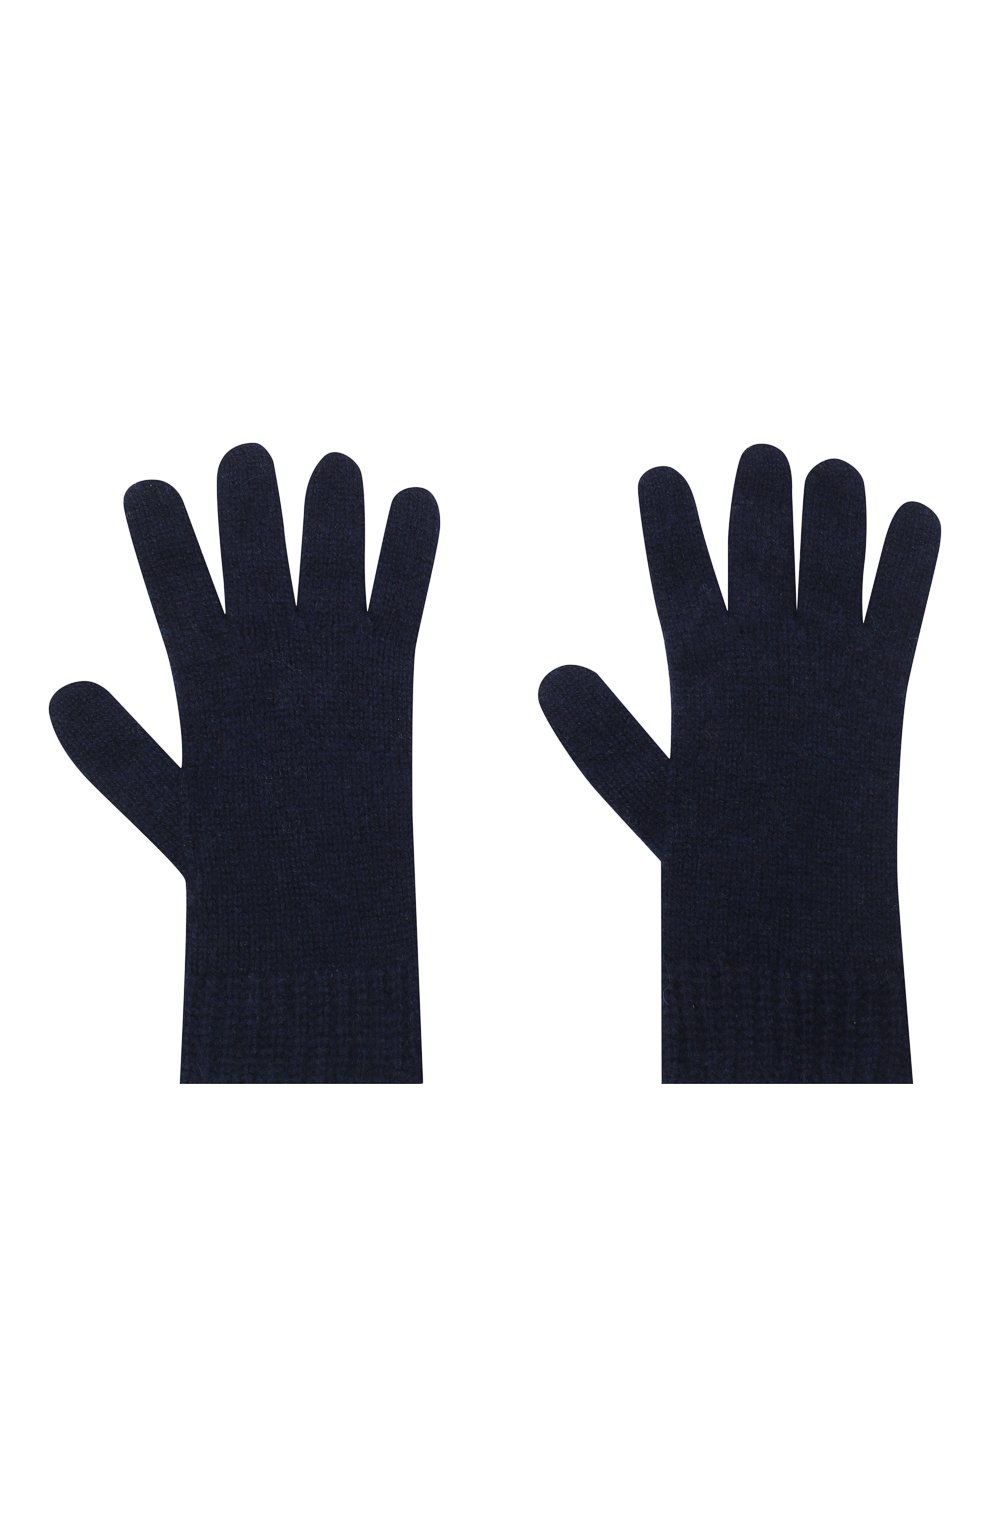 Детские кашемировые перчатки GIORGETTI CASHMERE темно-синего цвета, арт. MB1698/RASATI/12A | Фото 2 (Материал: Текстиль, Кашемир, Шерсть)